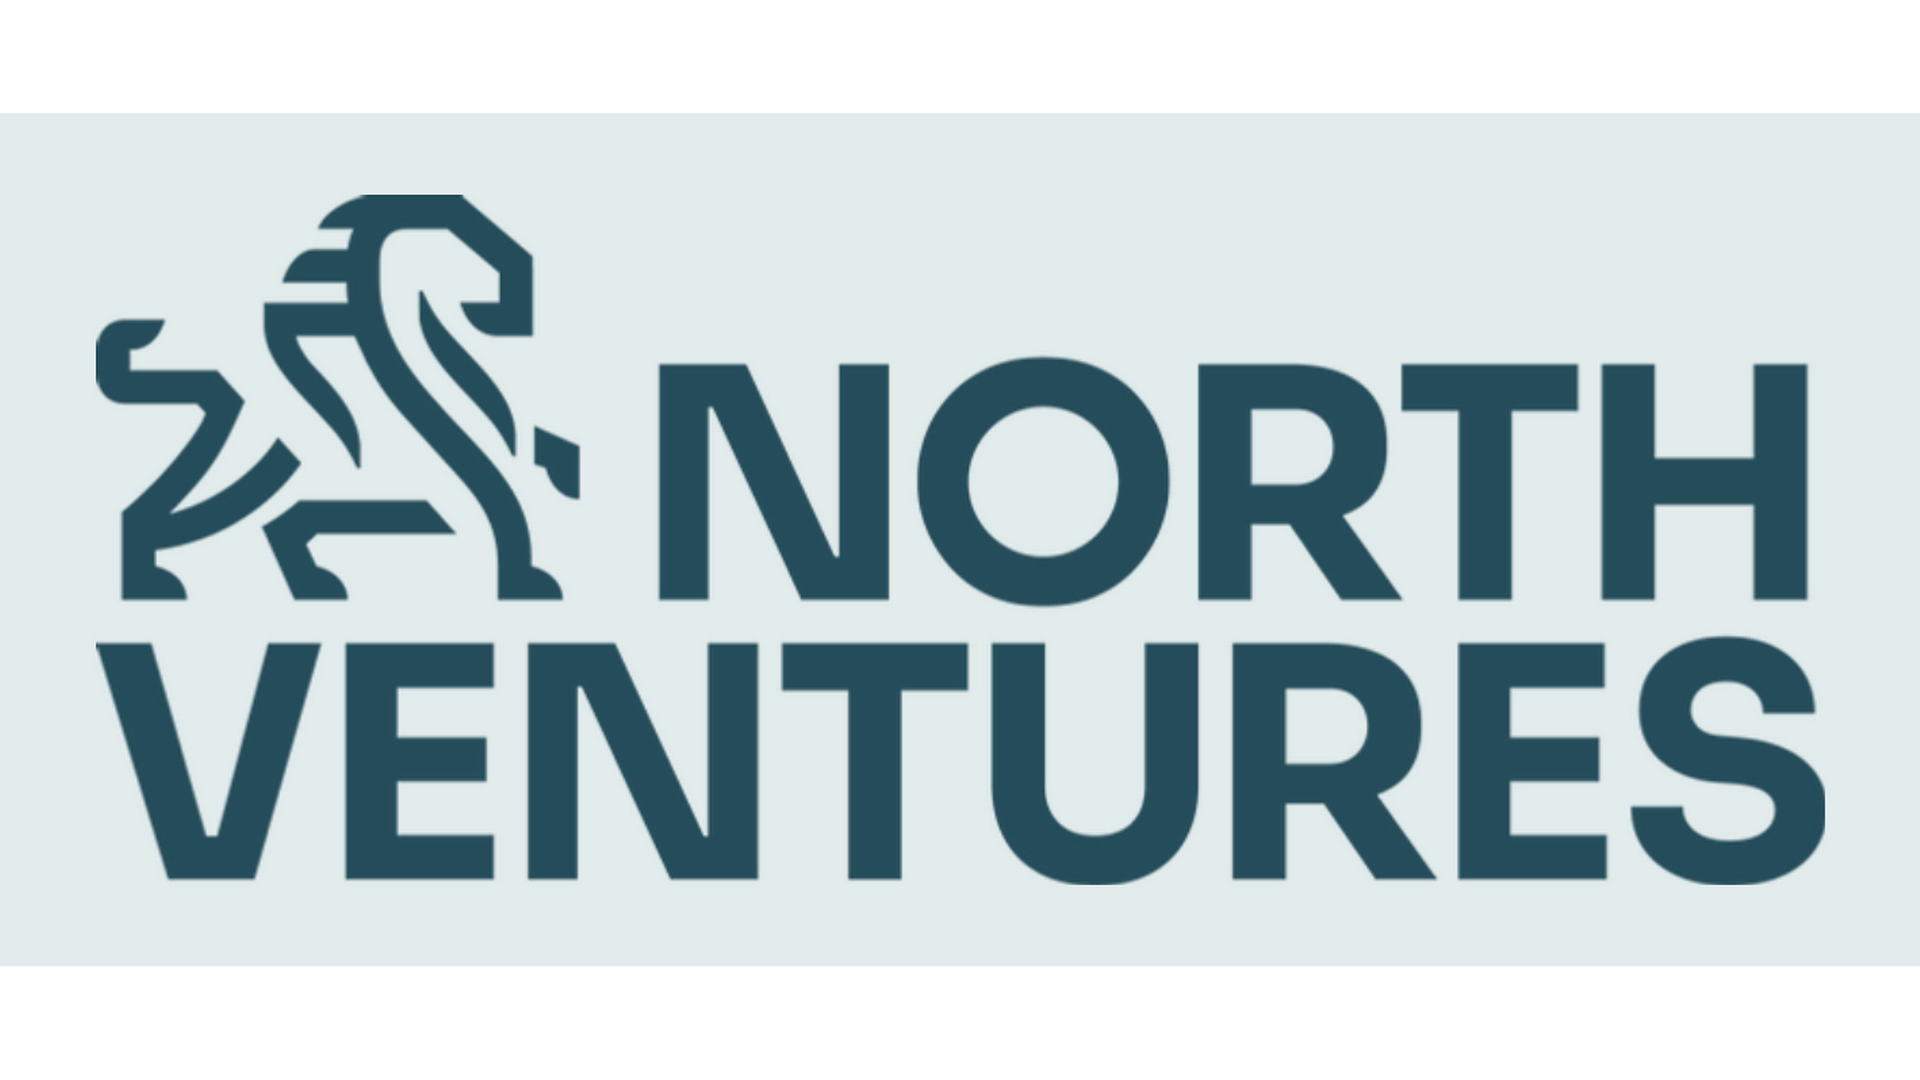 North Ventures blev etableret i 2016 af Jacob Enevoldsen og Alexander Bech, men har siden udvidet partnerkredsen. | Foto: PR / North Ventures